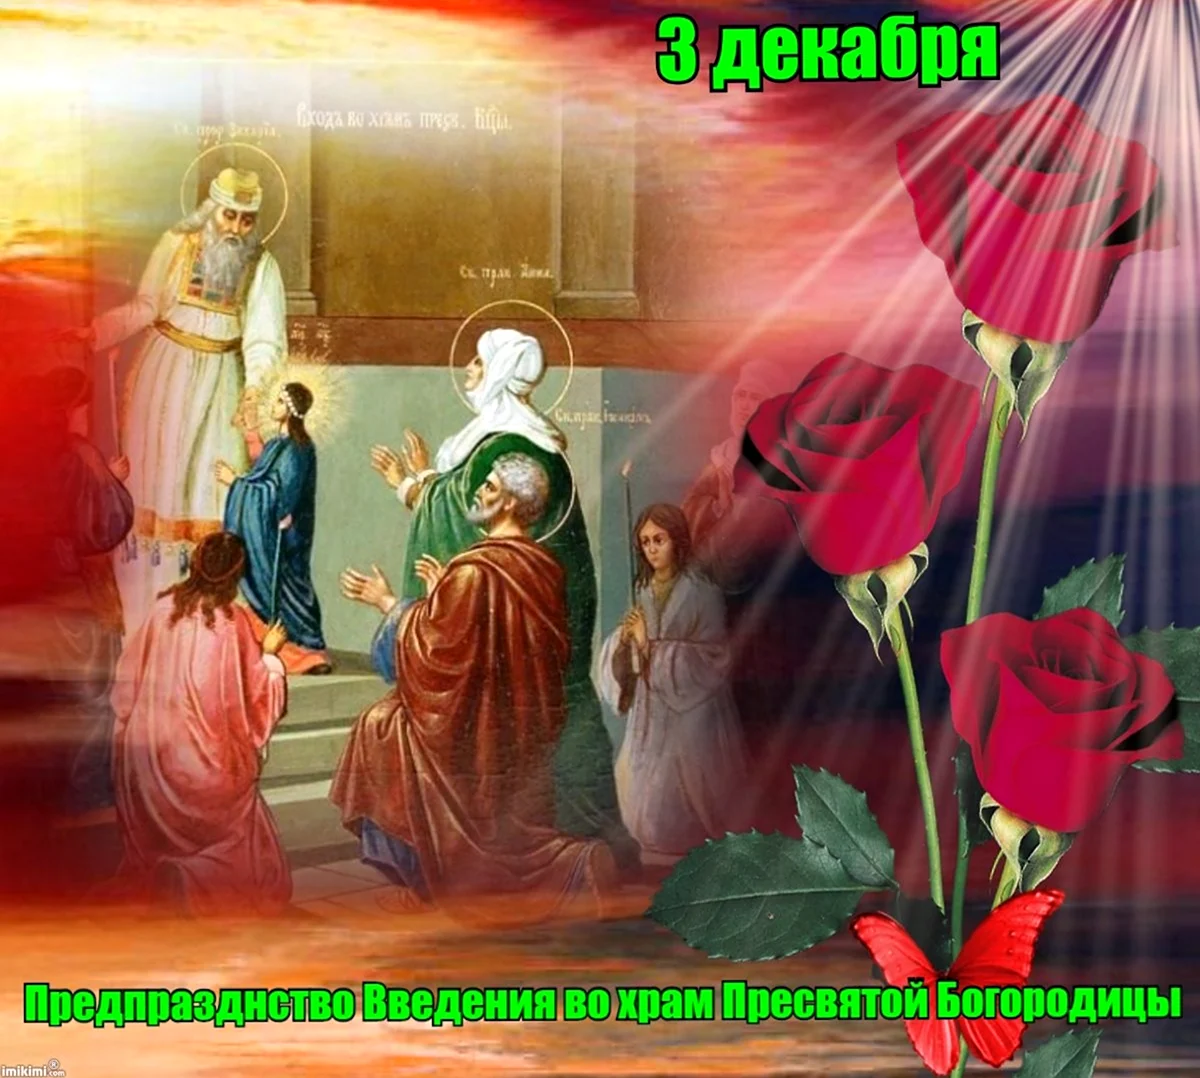 3 Декабря Введение во храм Пресвятой Богородицы. Поздравление